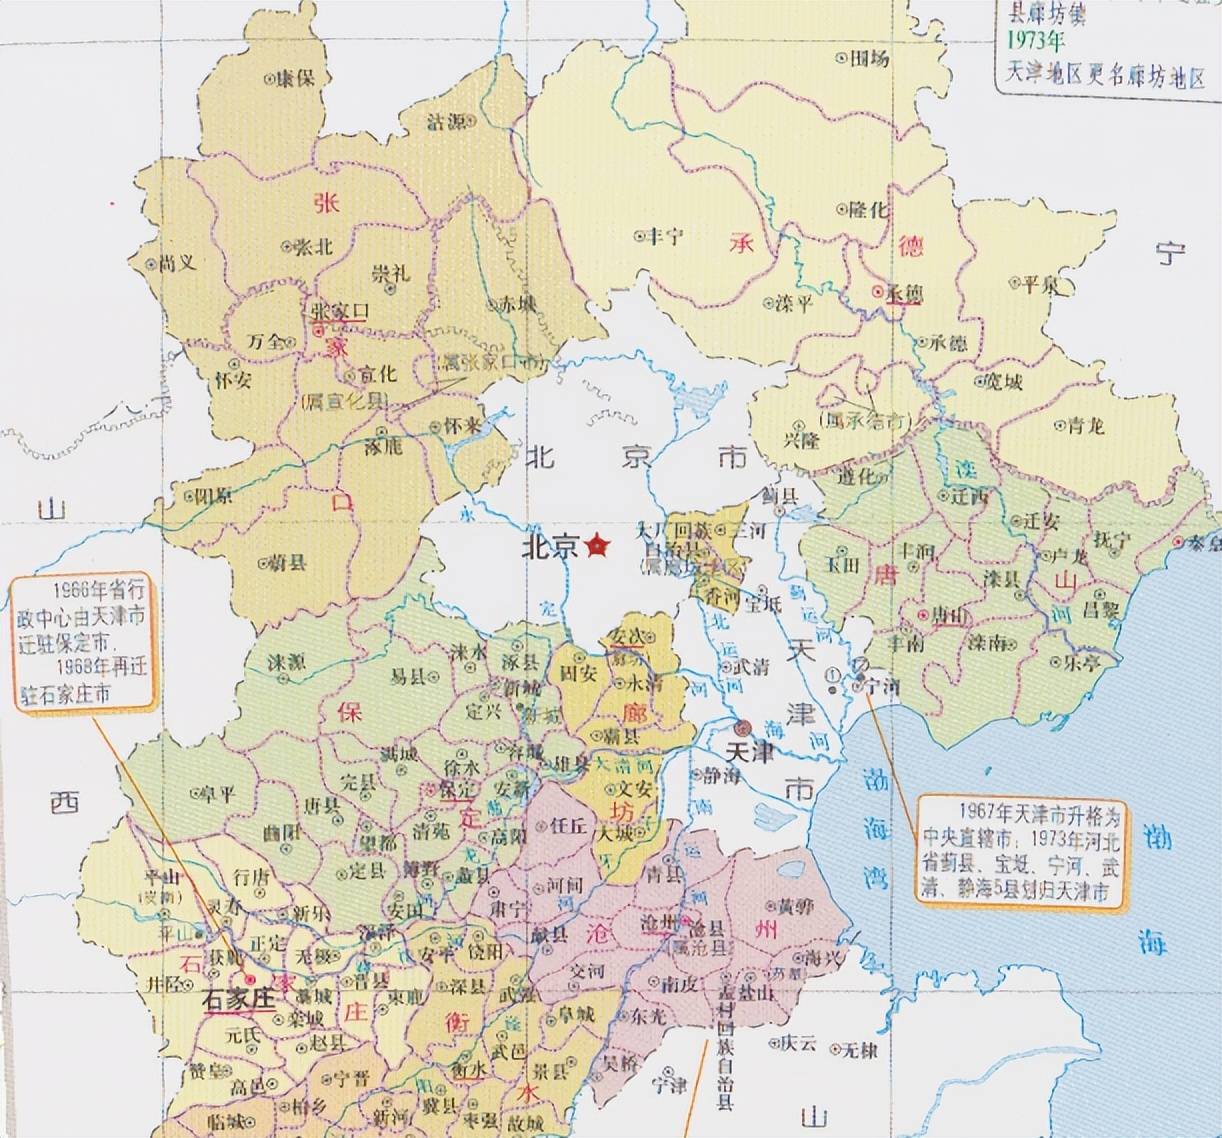 河北包围北京地图图片